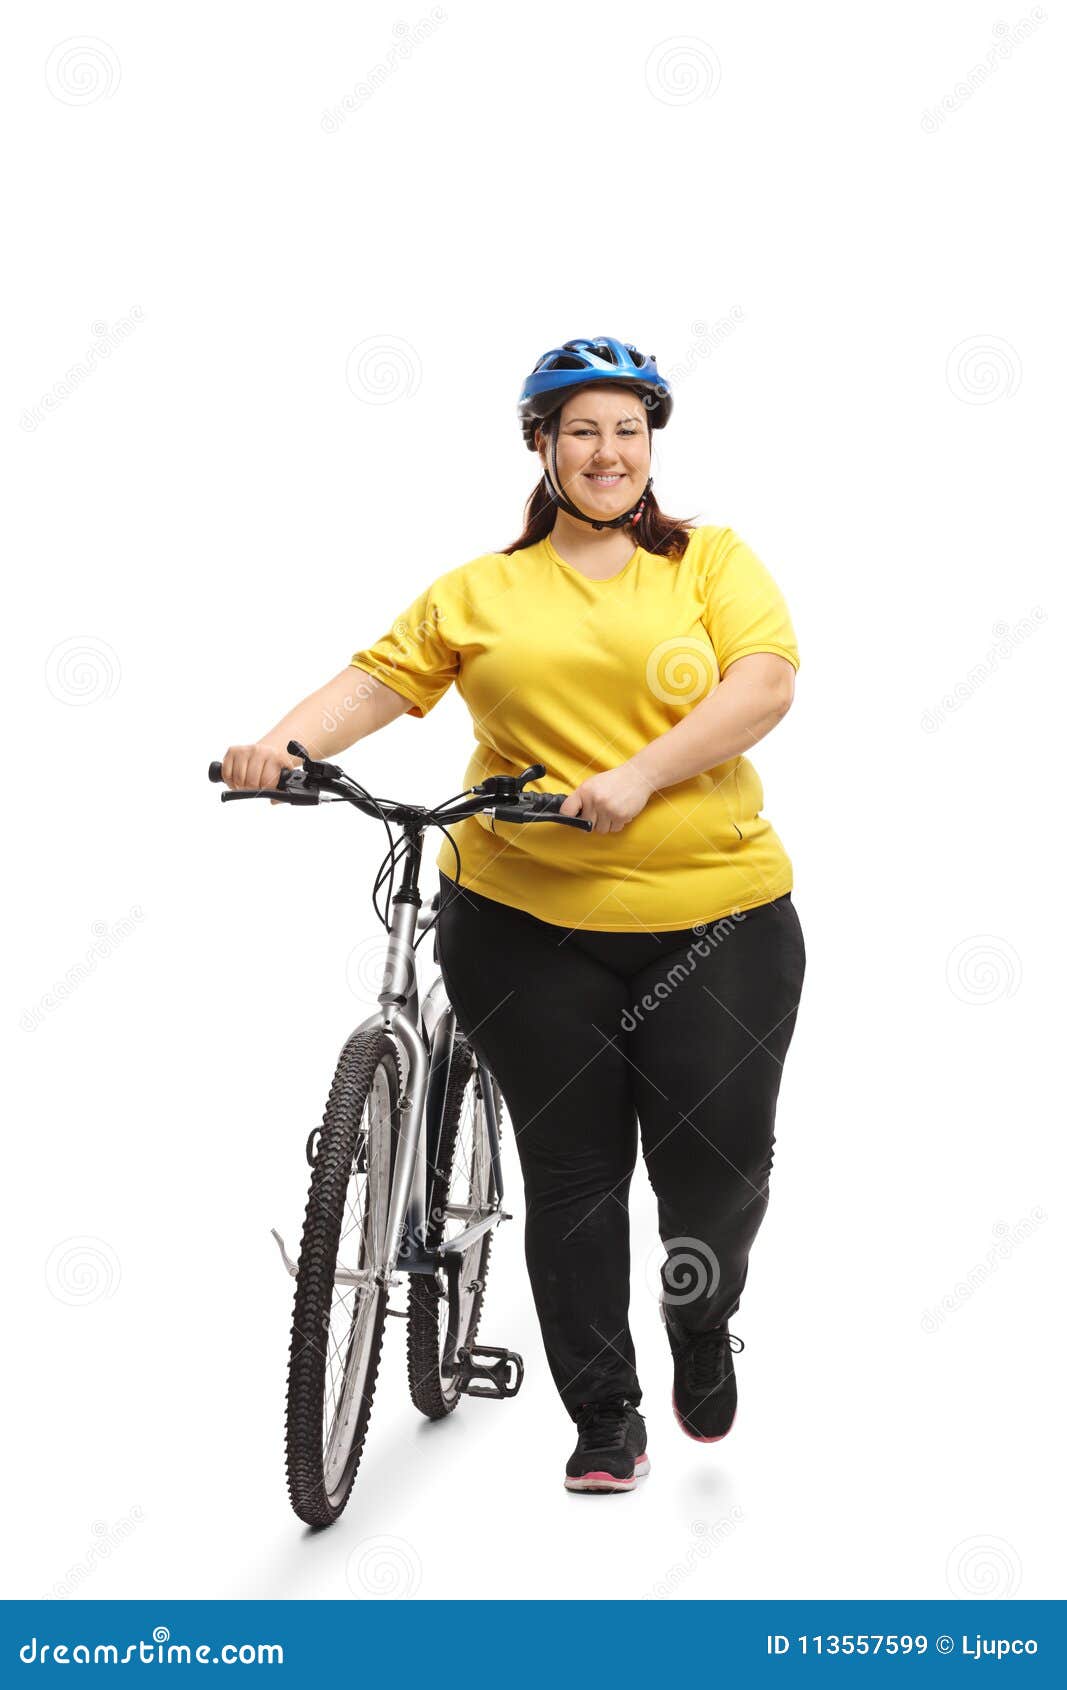 poids d'une bicyclette